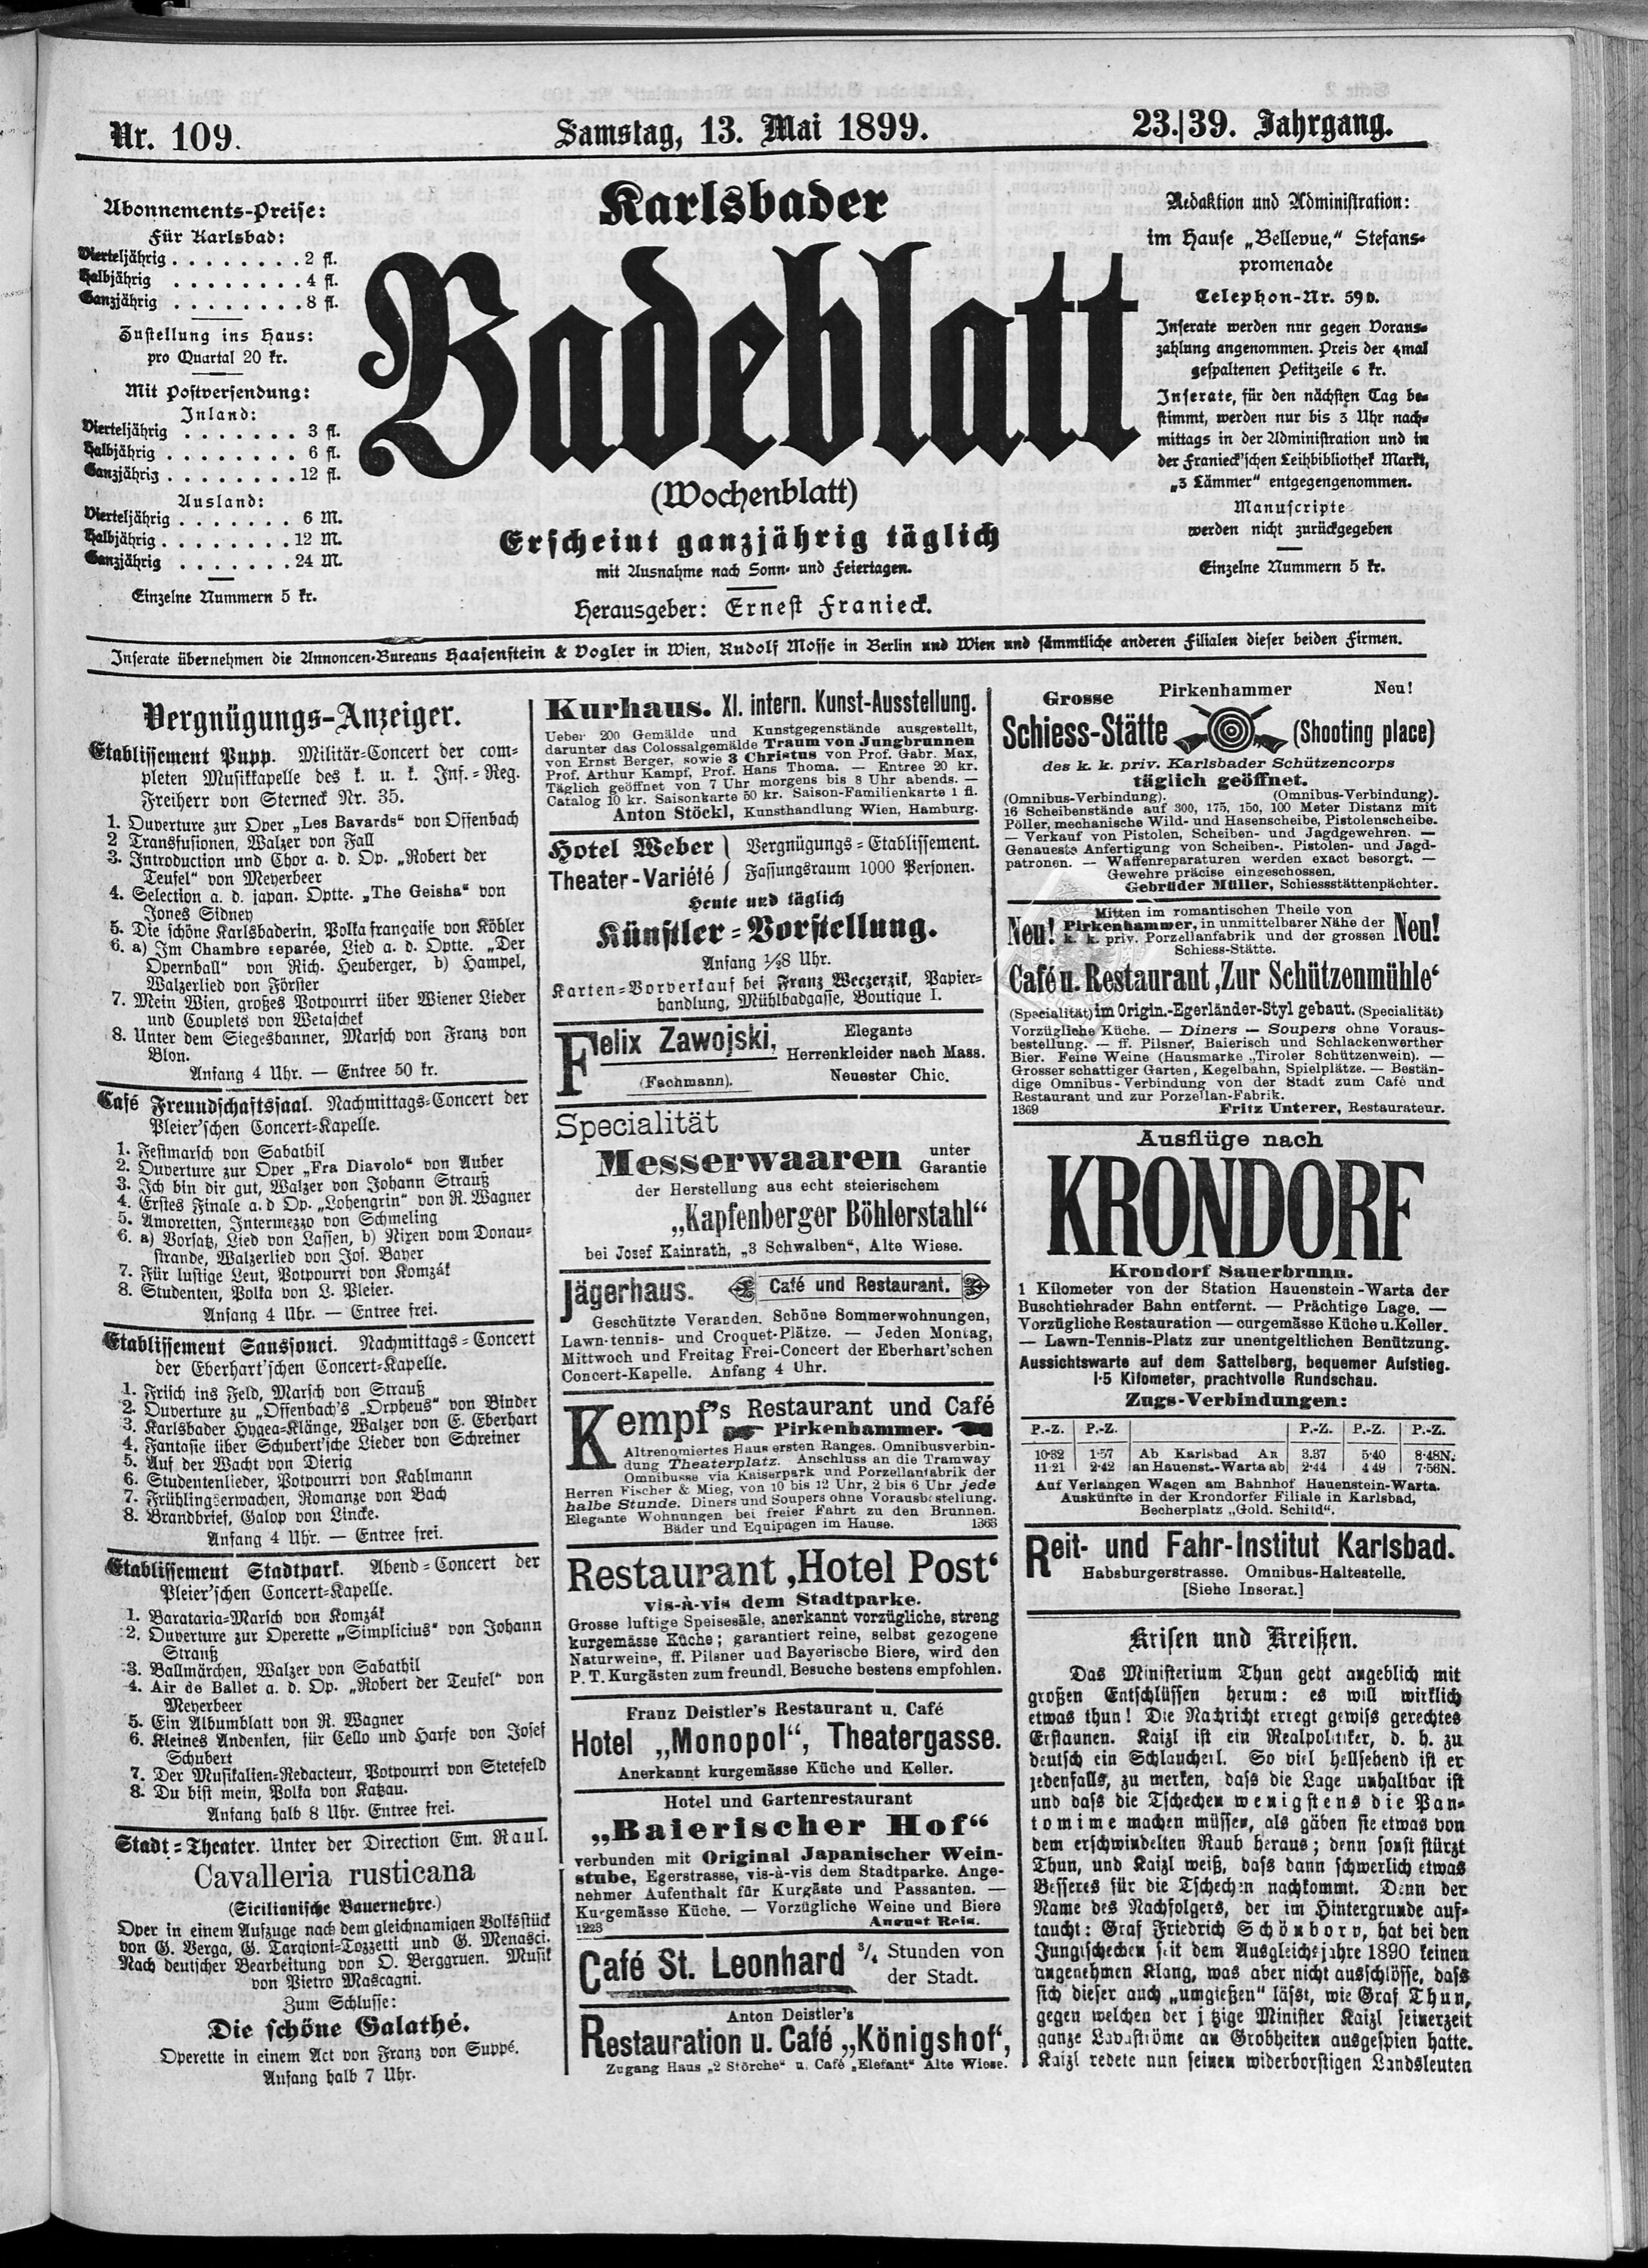 1. karlsbader-badeblatt-1899-05-13-n109_5035